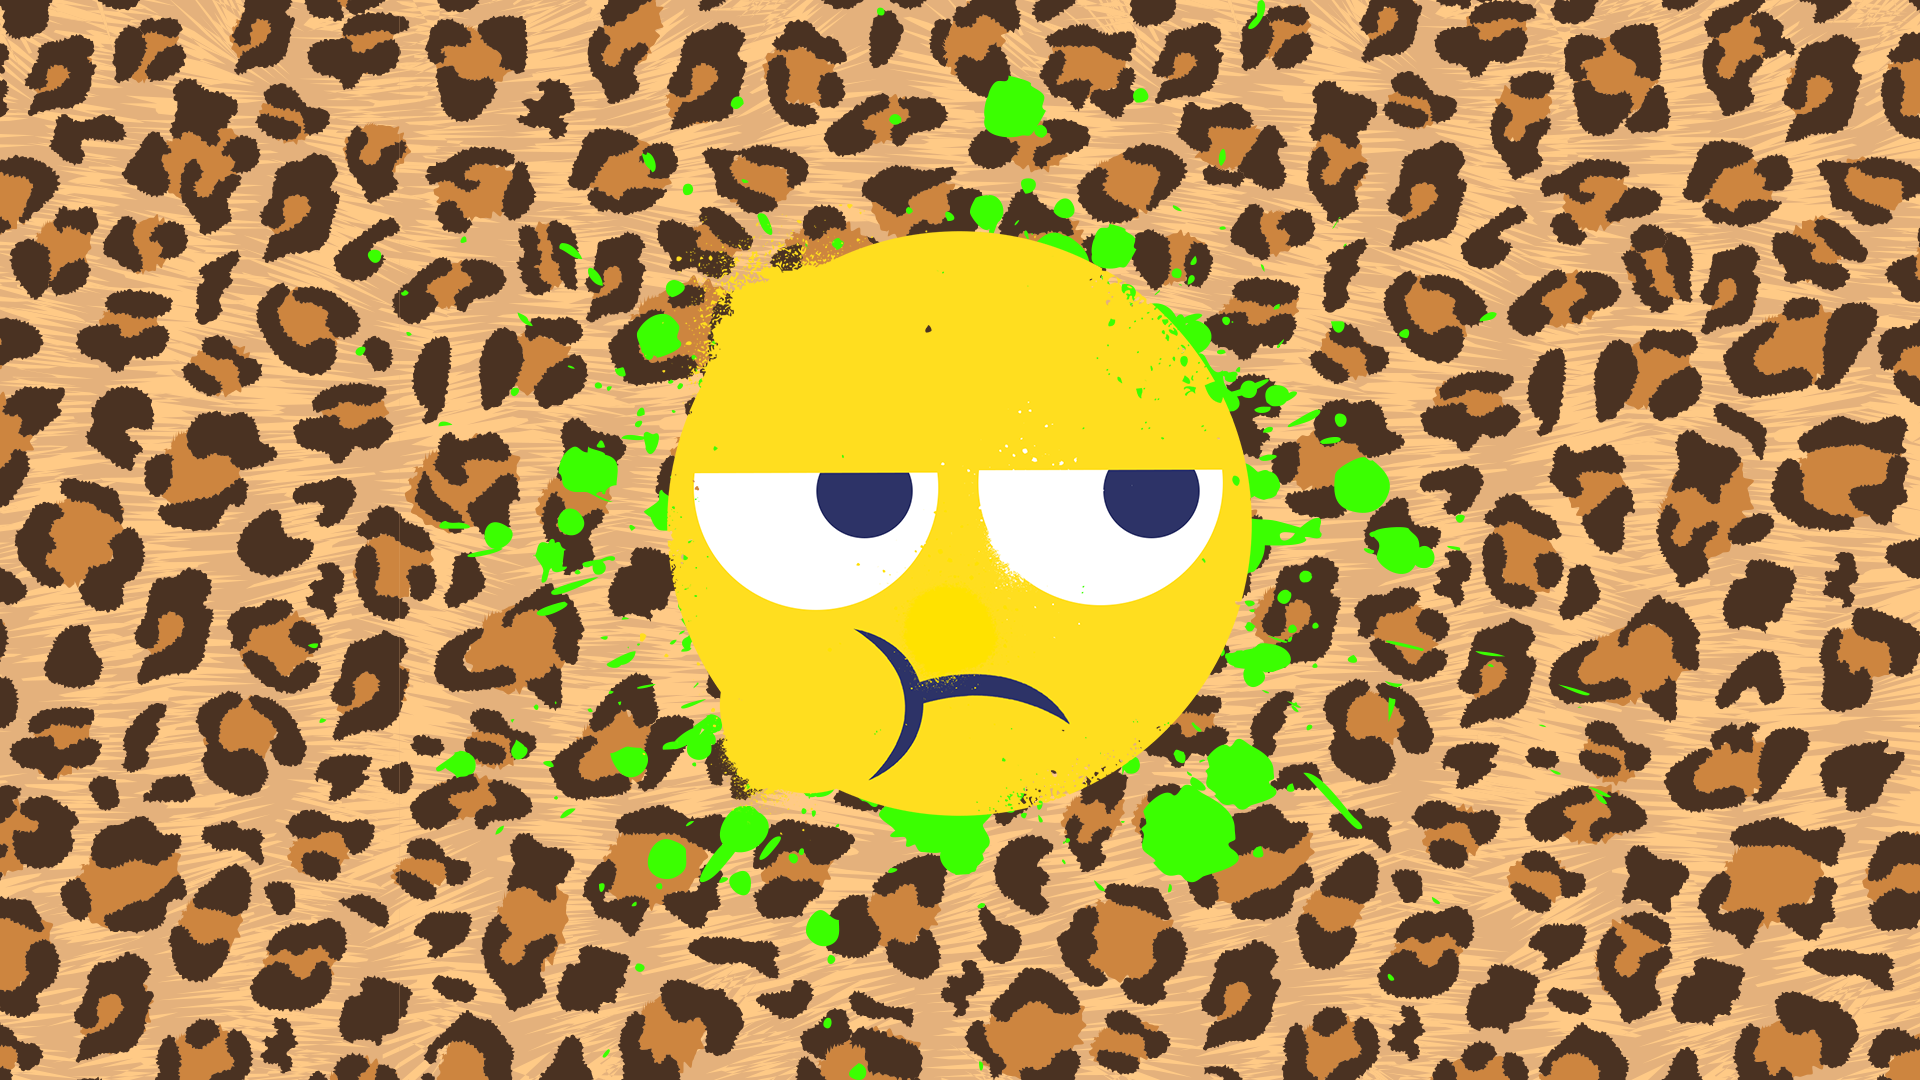 A grumpy looking emoji face 